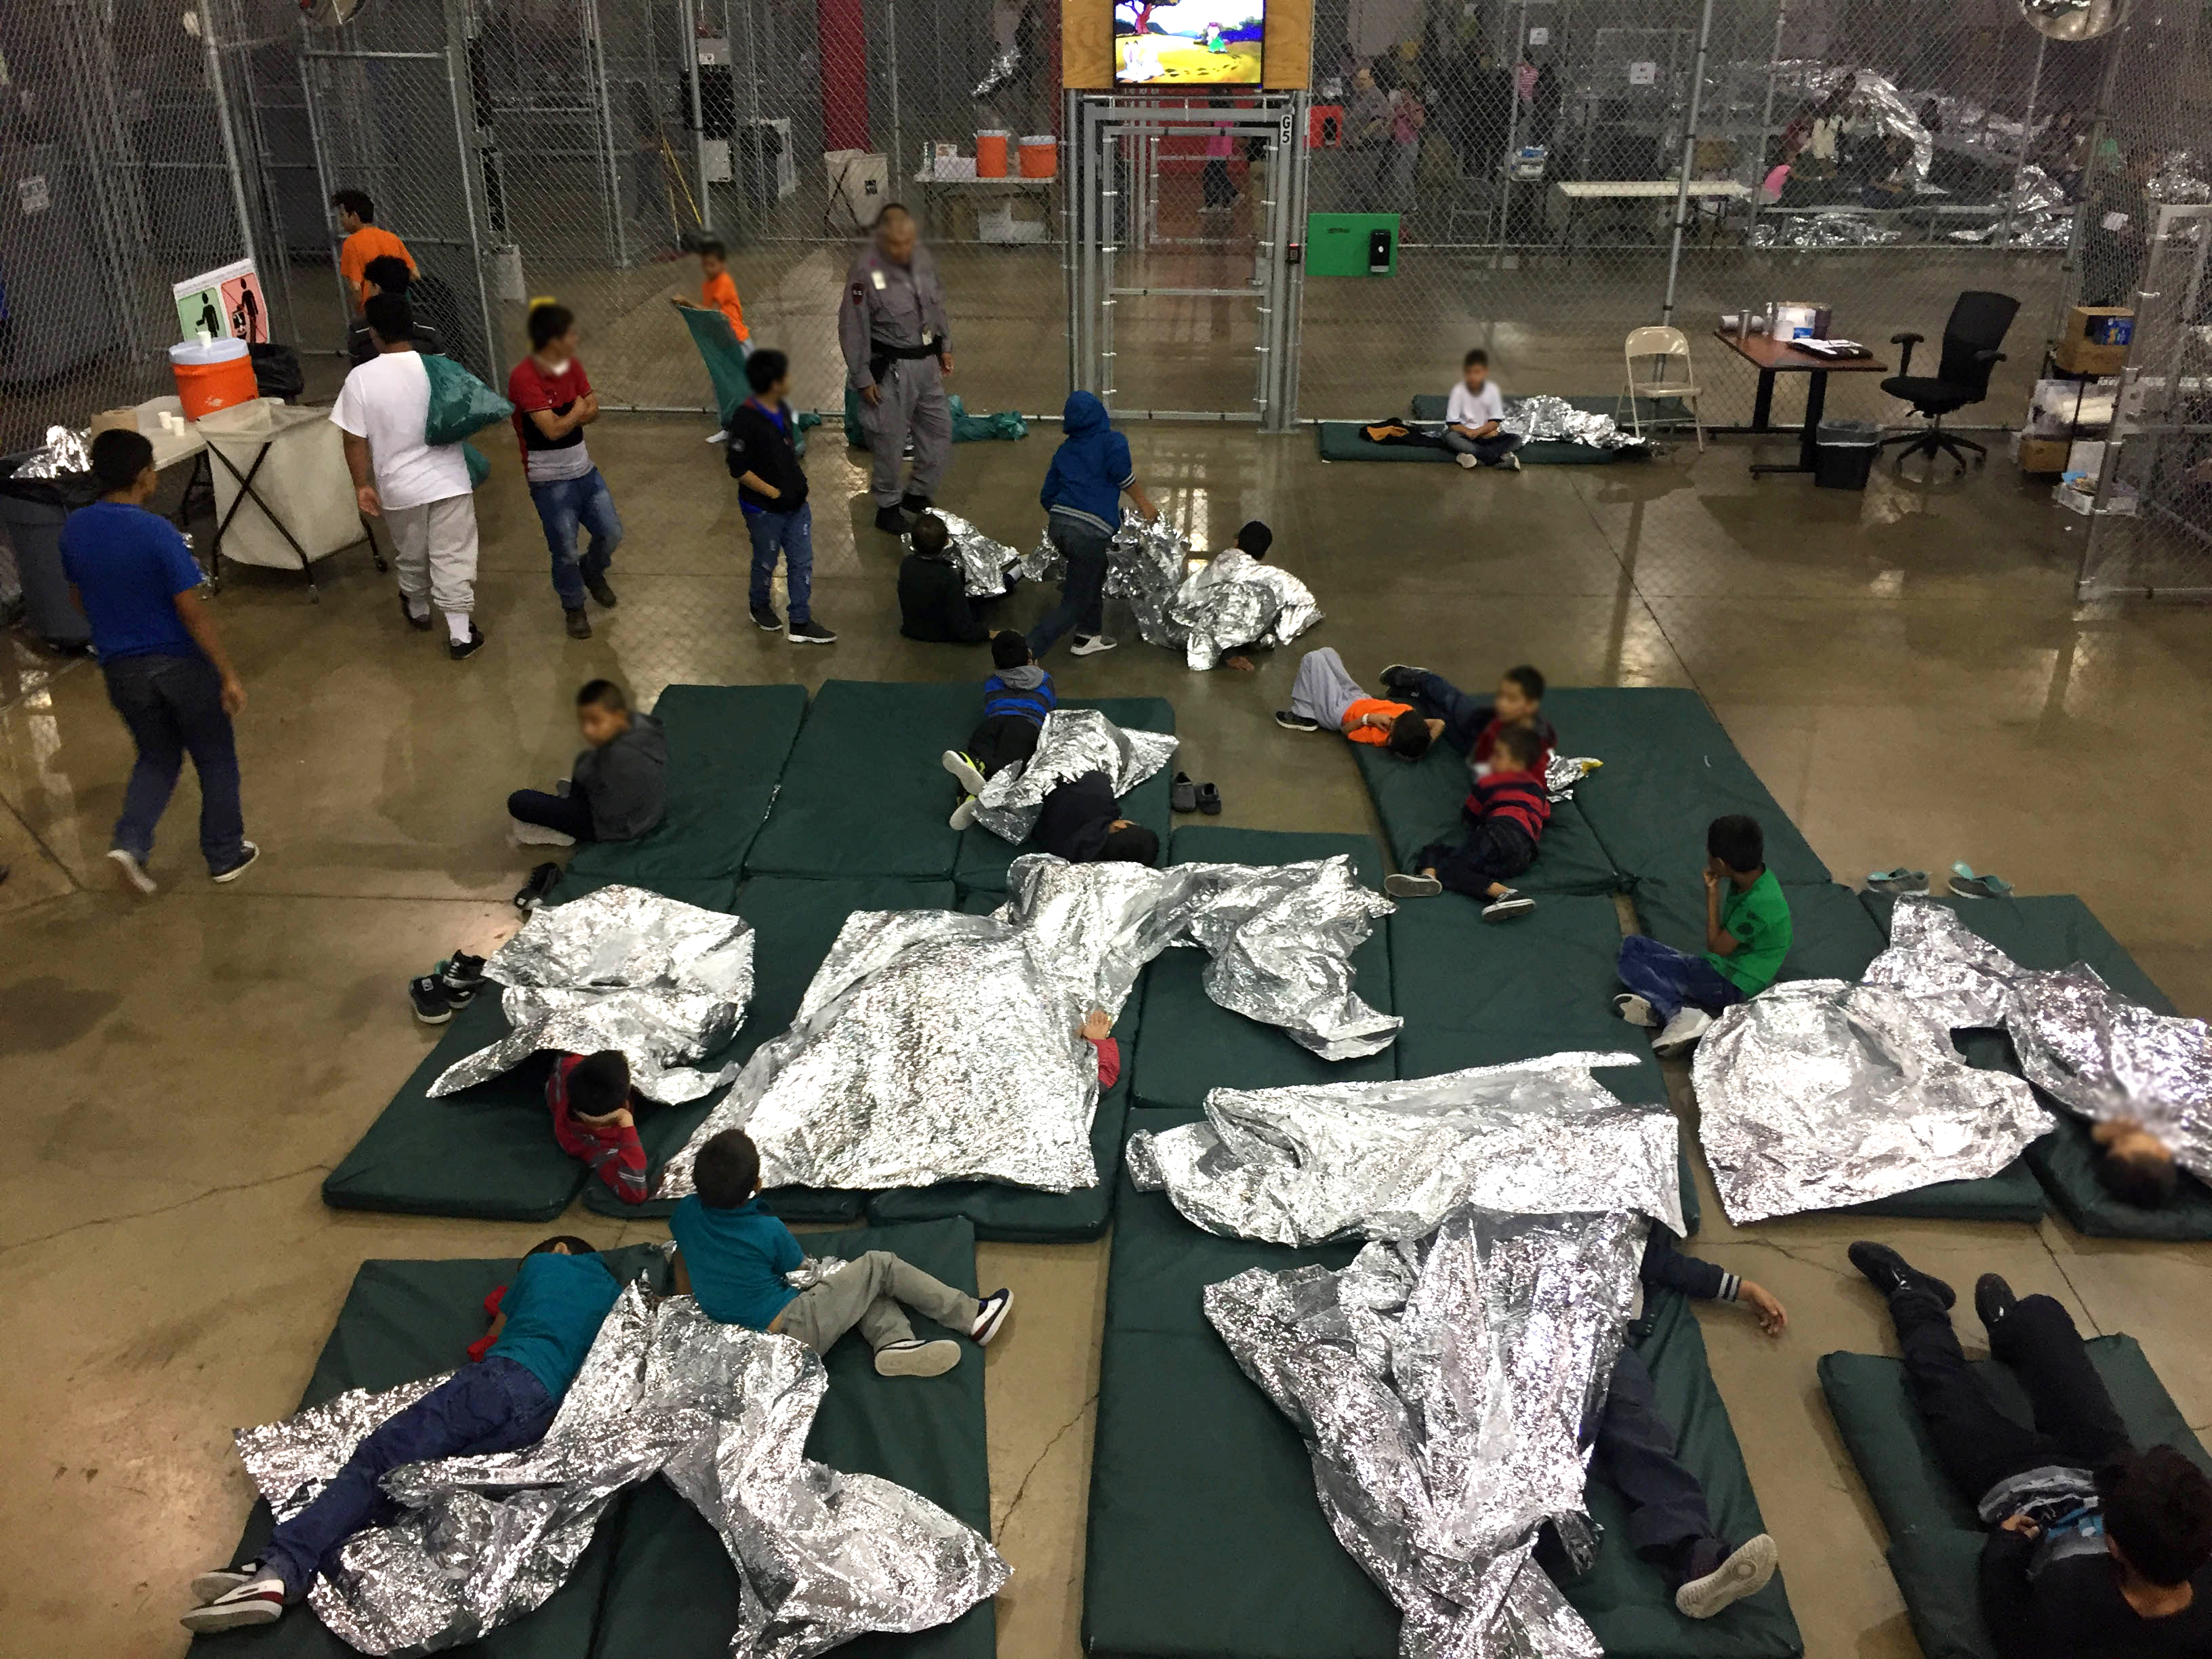 Children in a detention center.